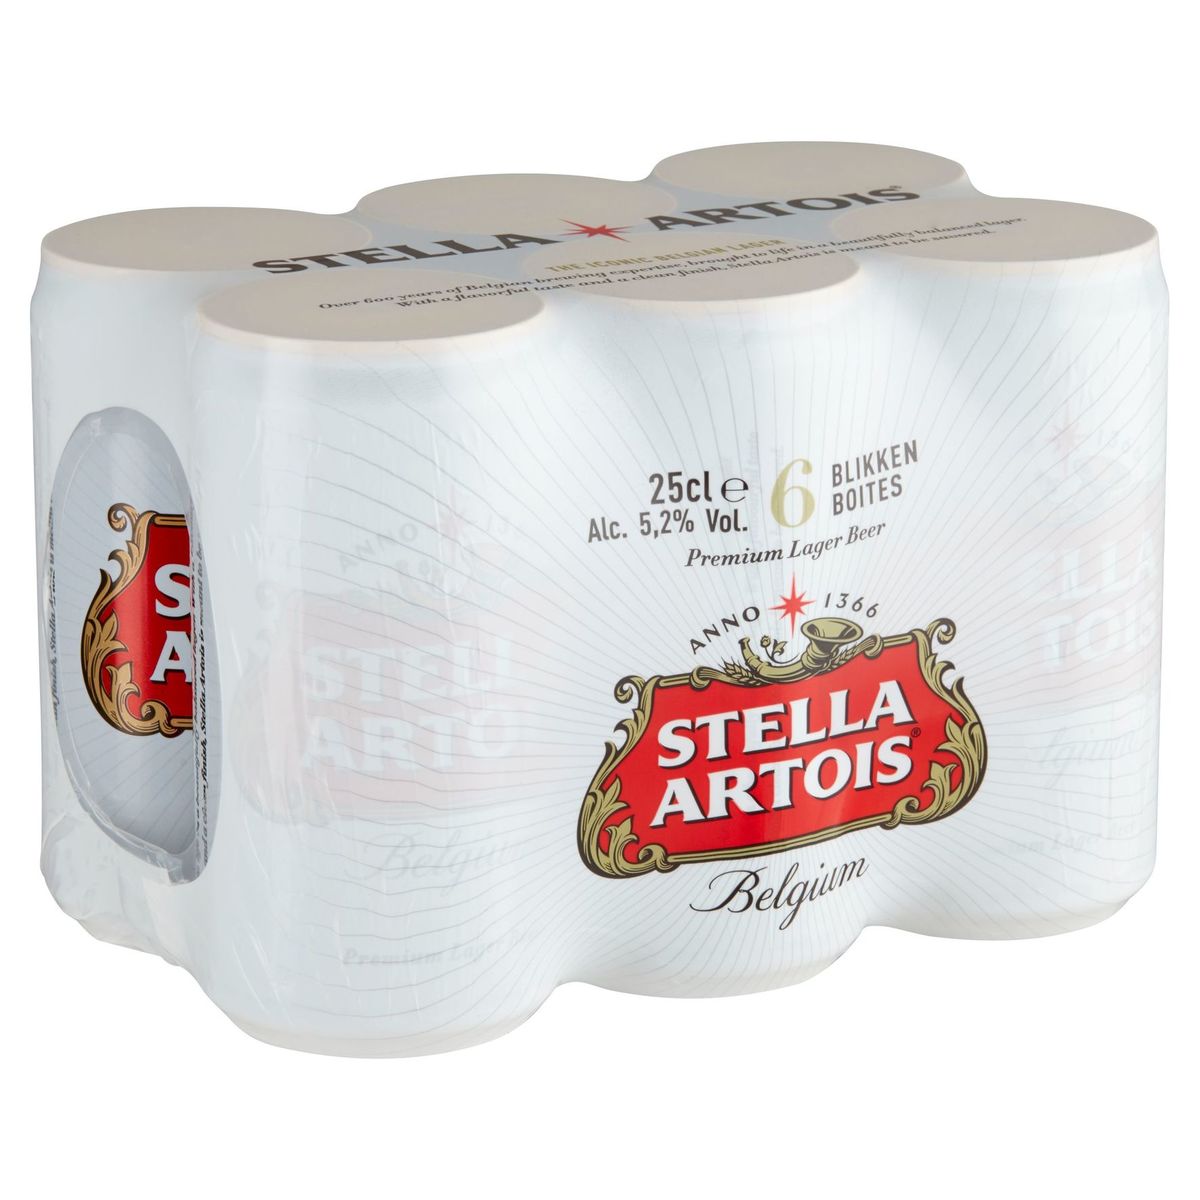 Stella Artois Belgium Premium Lager Beer 6 Blikken 25 cl